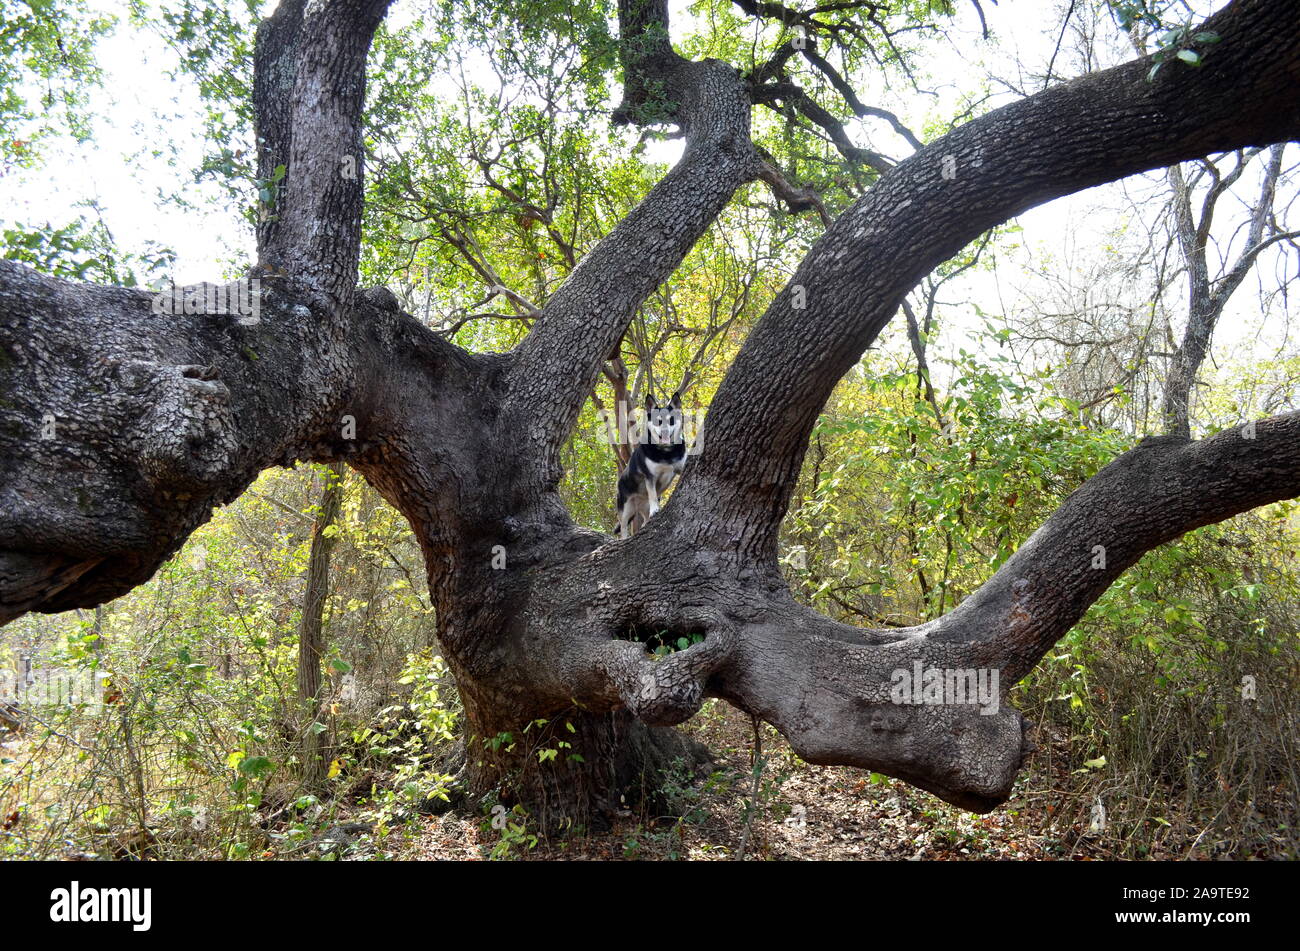 Austin, Texas - Rivière, le husky-mutt, remonte une ancienne live oak lors d'une randonnée à McKinney Falls State Park. Banque D'Images